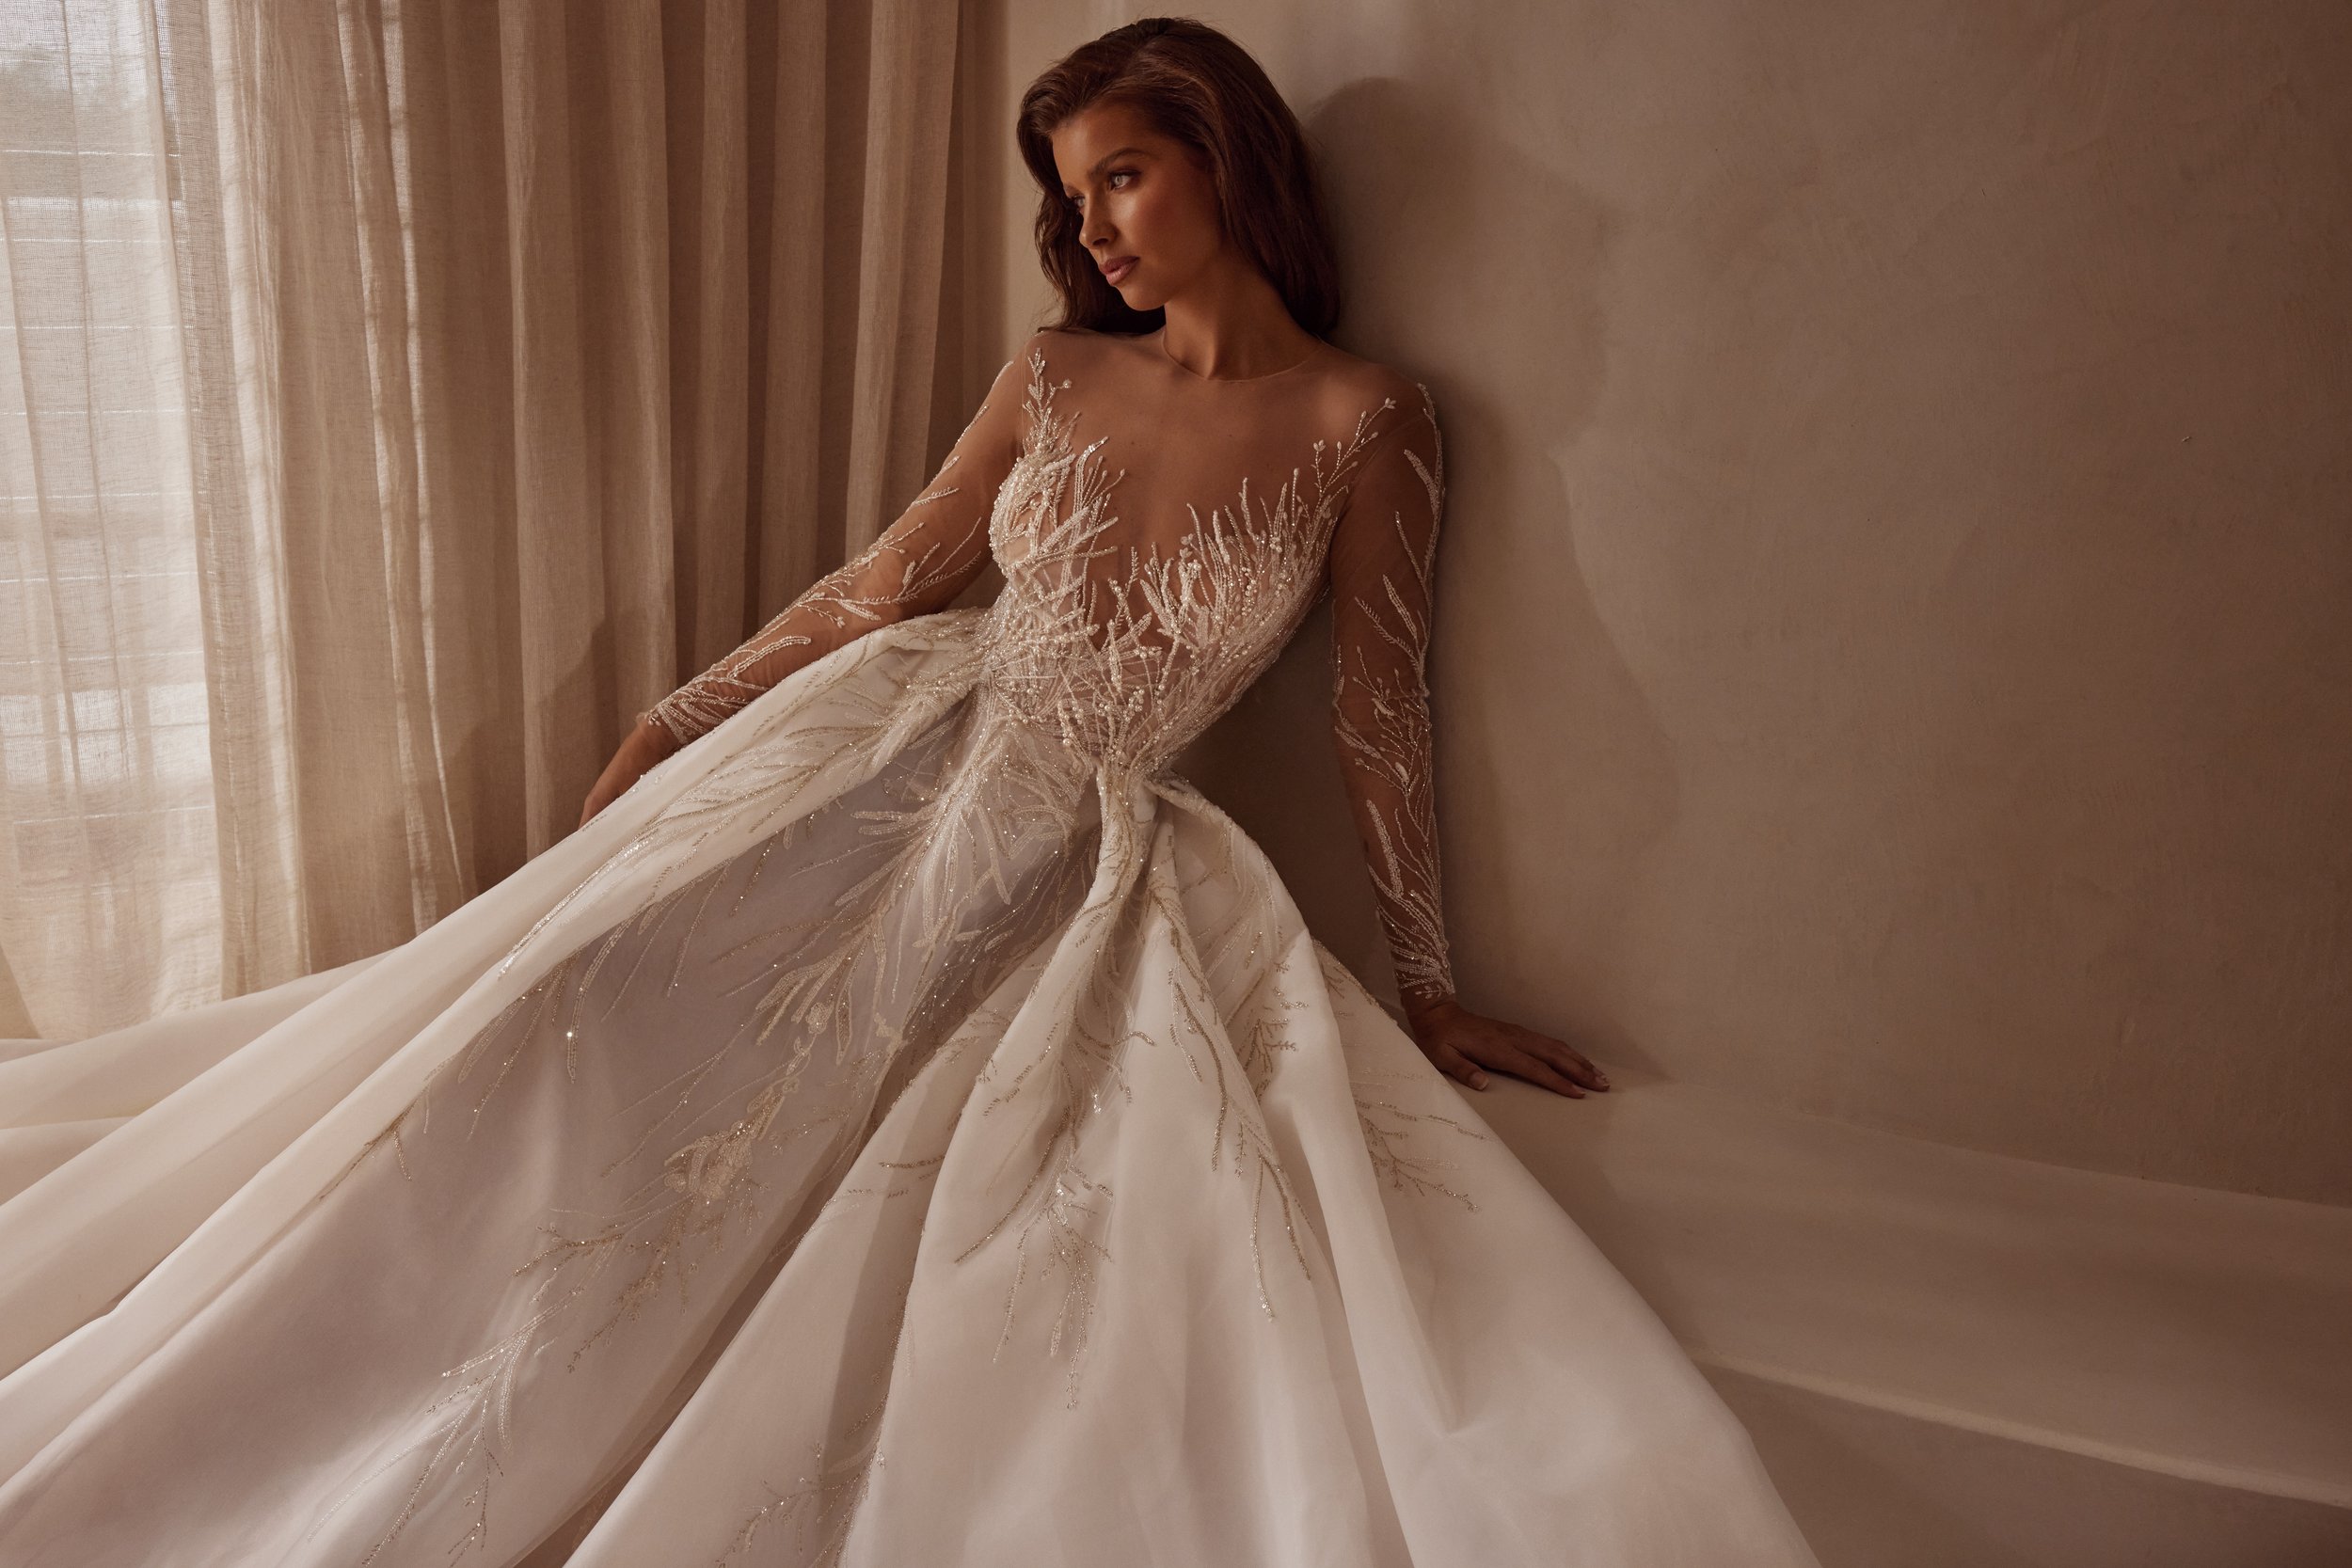 Short-lace wedding dresses - Plus size bridal - Leah S Designs